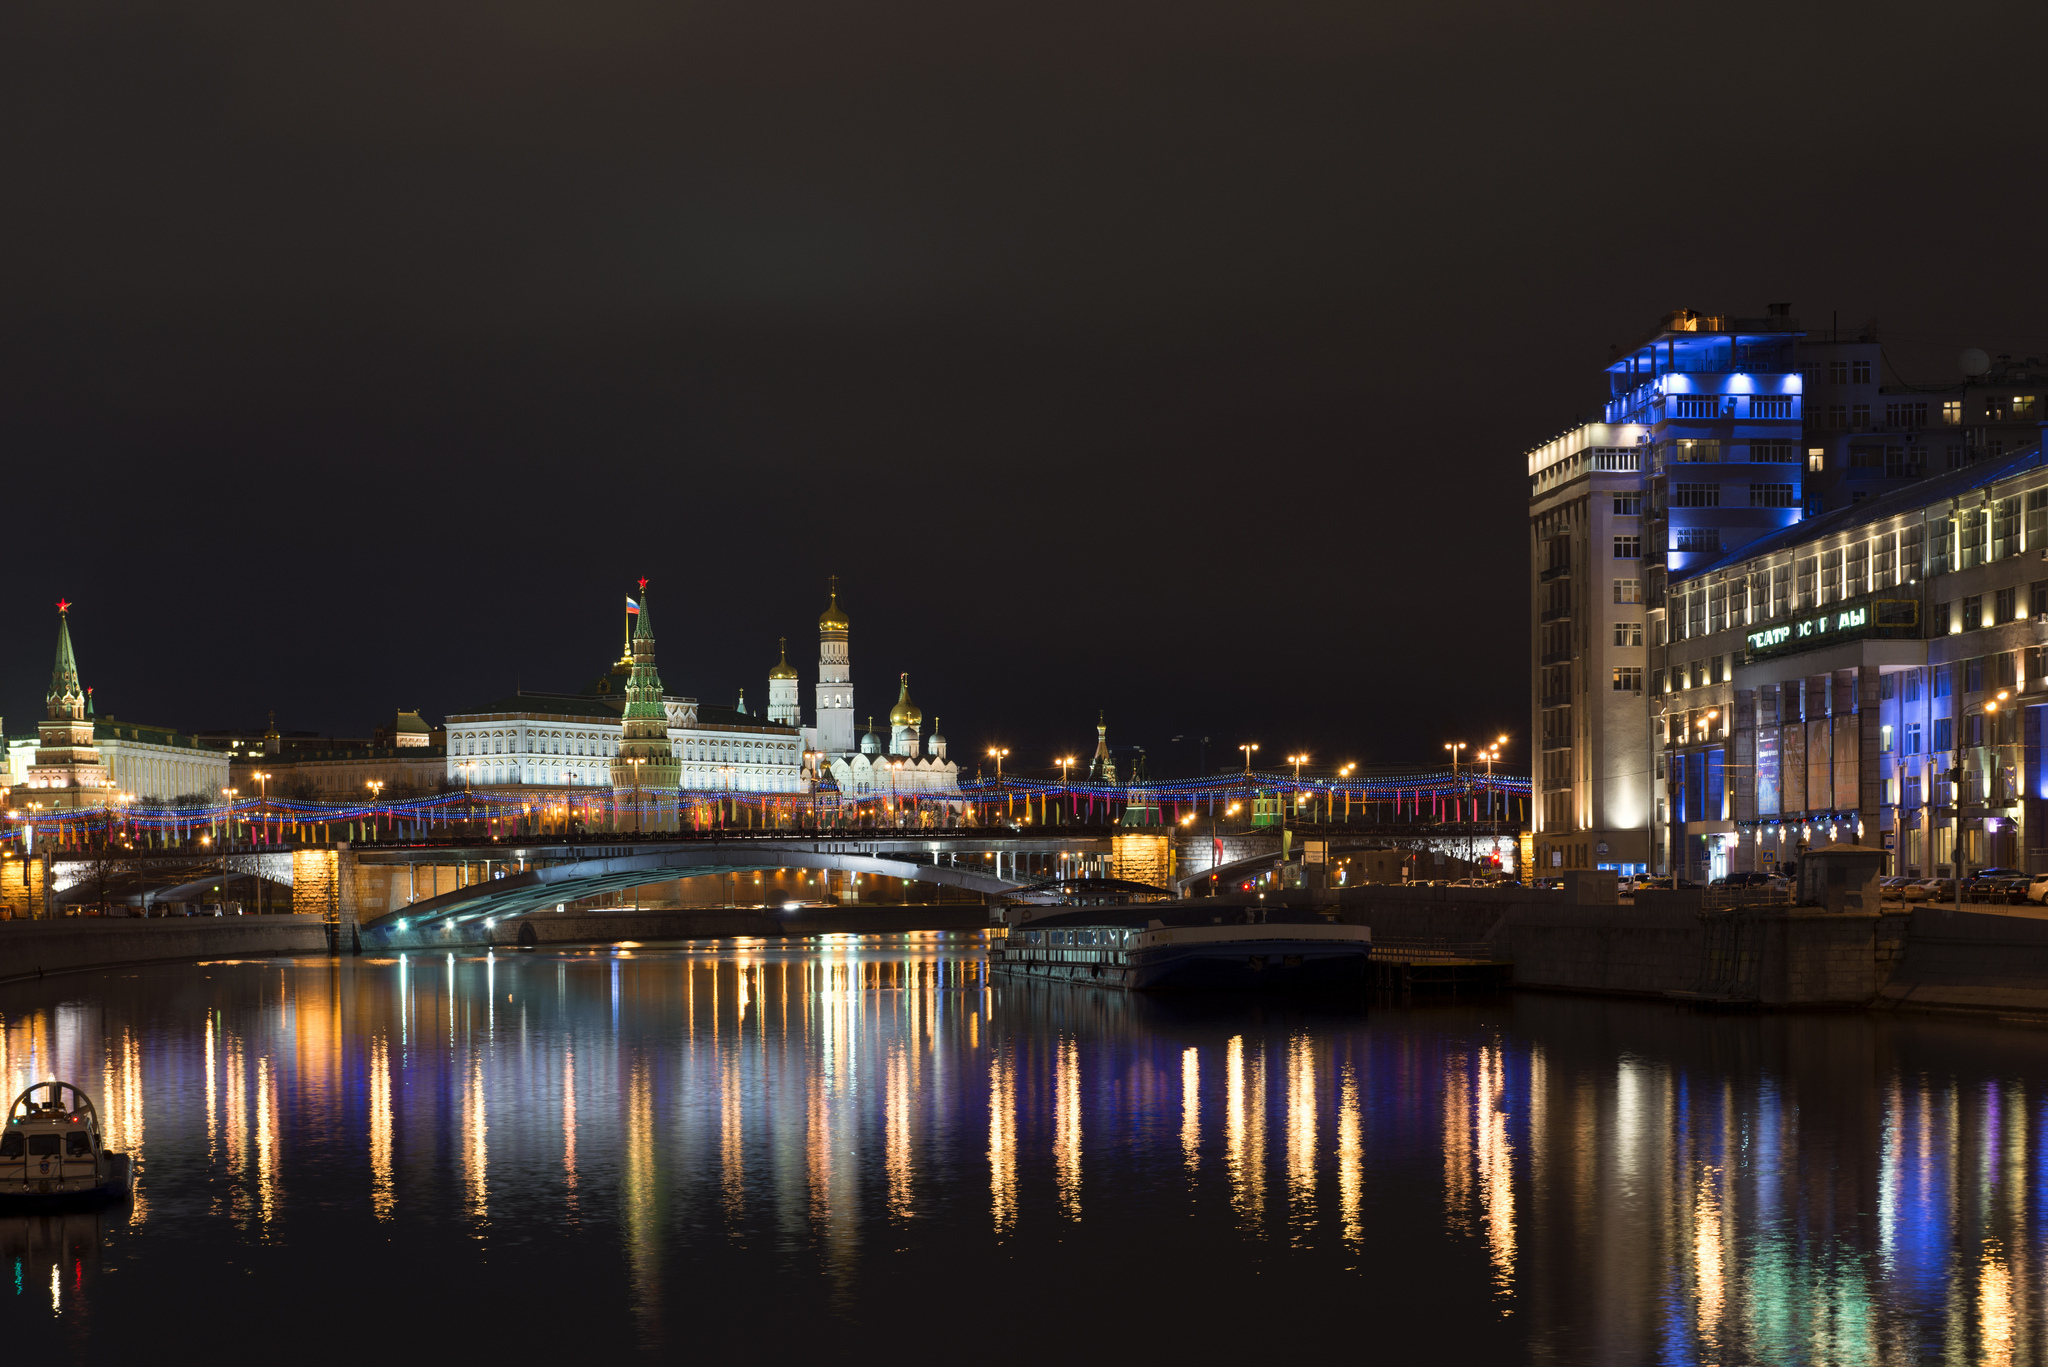 Москва красиво ночью. Москоу Сити река Москва. Москва река Москва Сити ночью. Ночная Москва-река вид с теплохода.